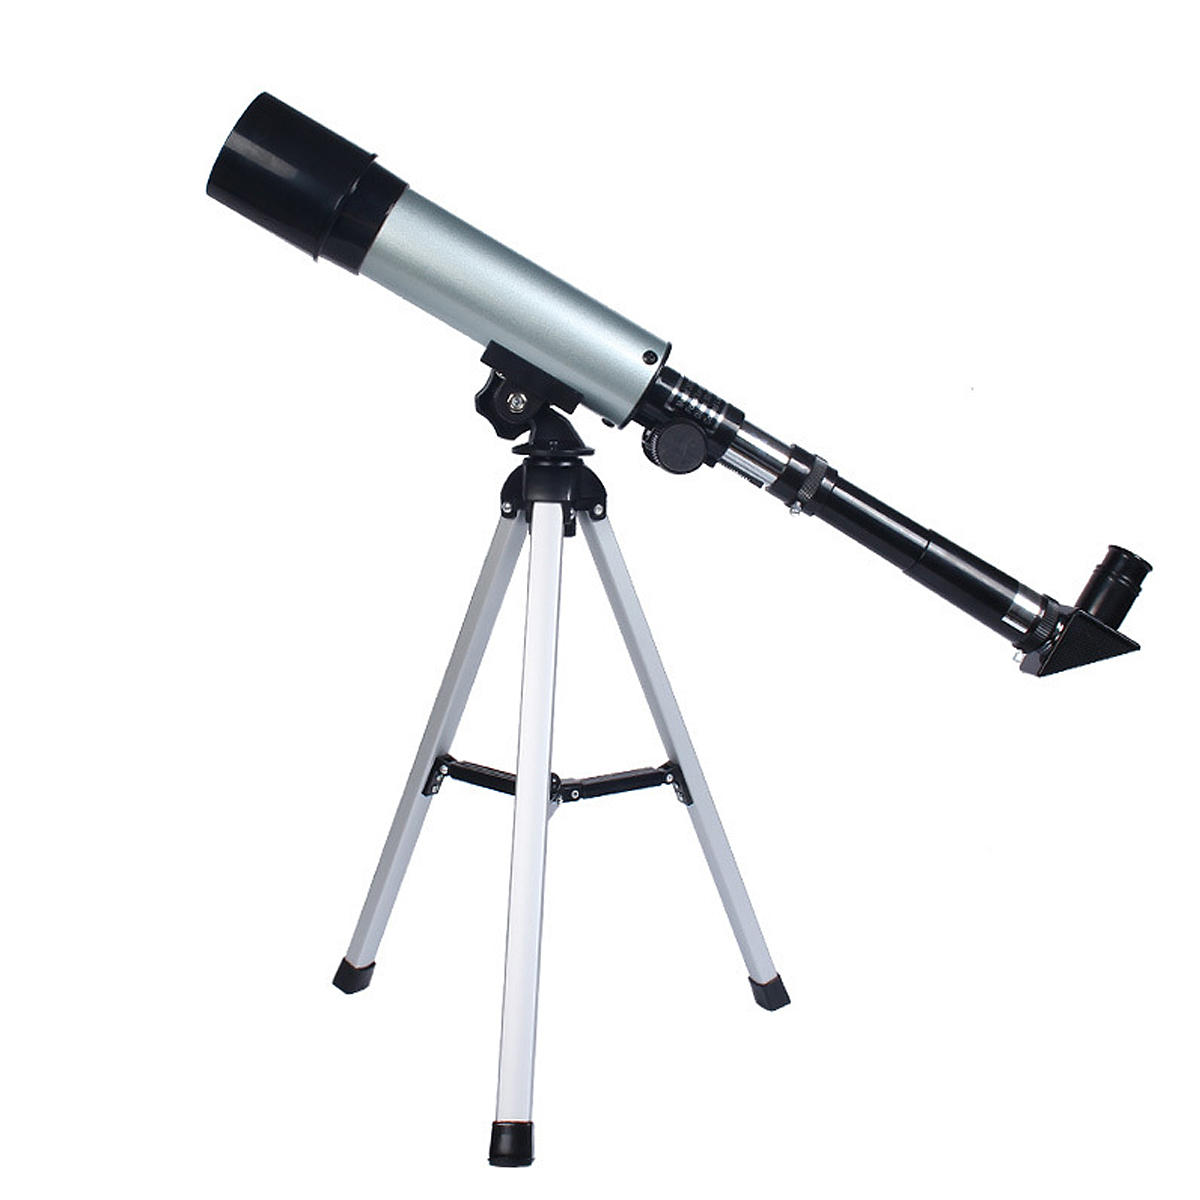 Αστρονομικό τηλεσκόπιο ανακλαστήρα F36050 90X με καθρέπτη ουρανού σε γωνία 90 °. Καθαρή εικόνα.